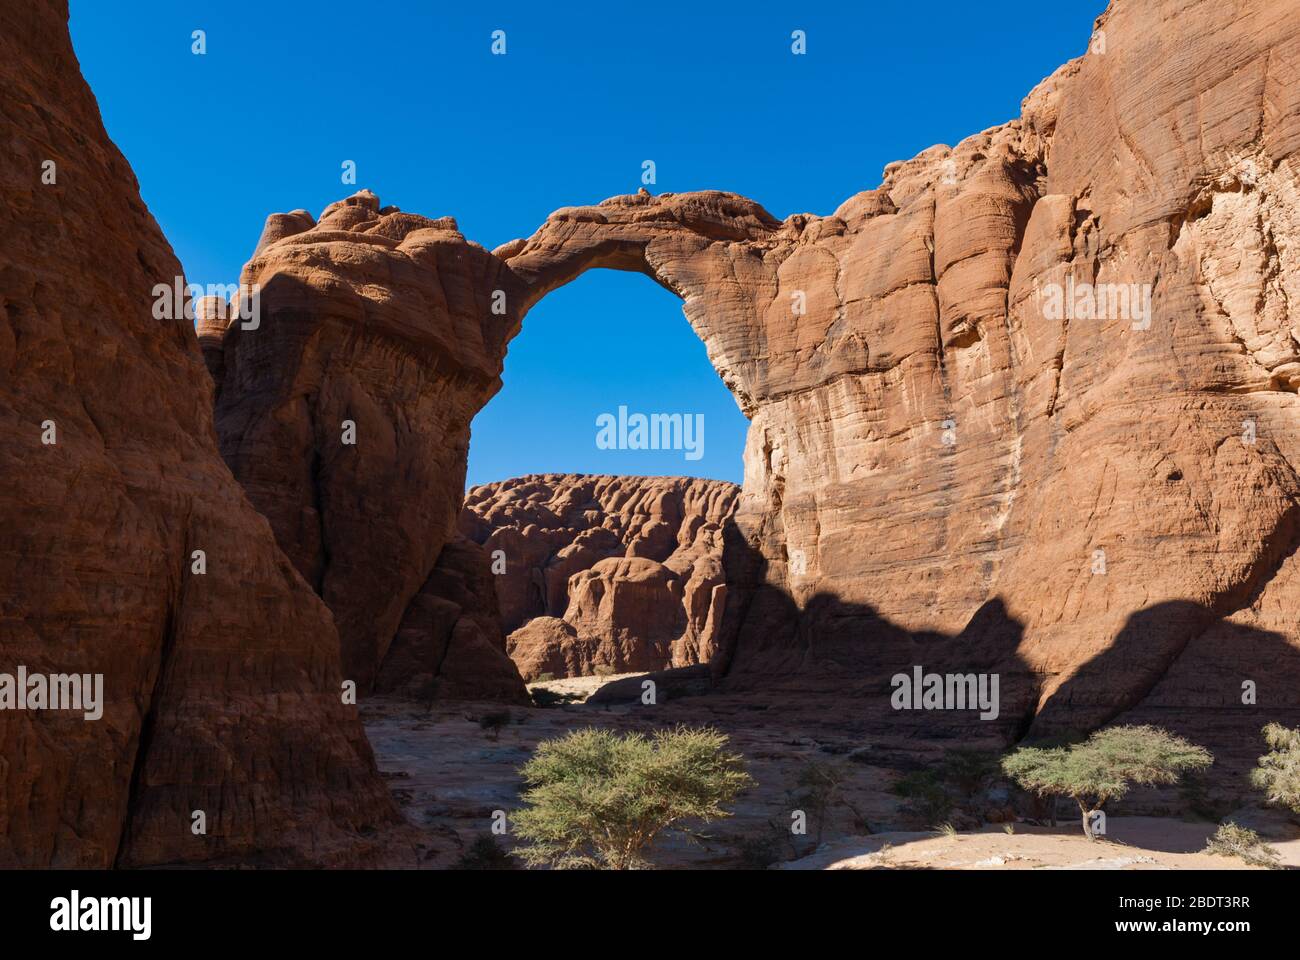 Résumé roches formation d'Aloba arc au plateau Ennedi, dans le désert du Sahara, Tchad, Adrica Banque D'Images